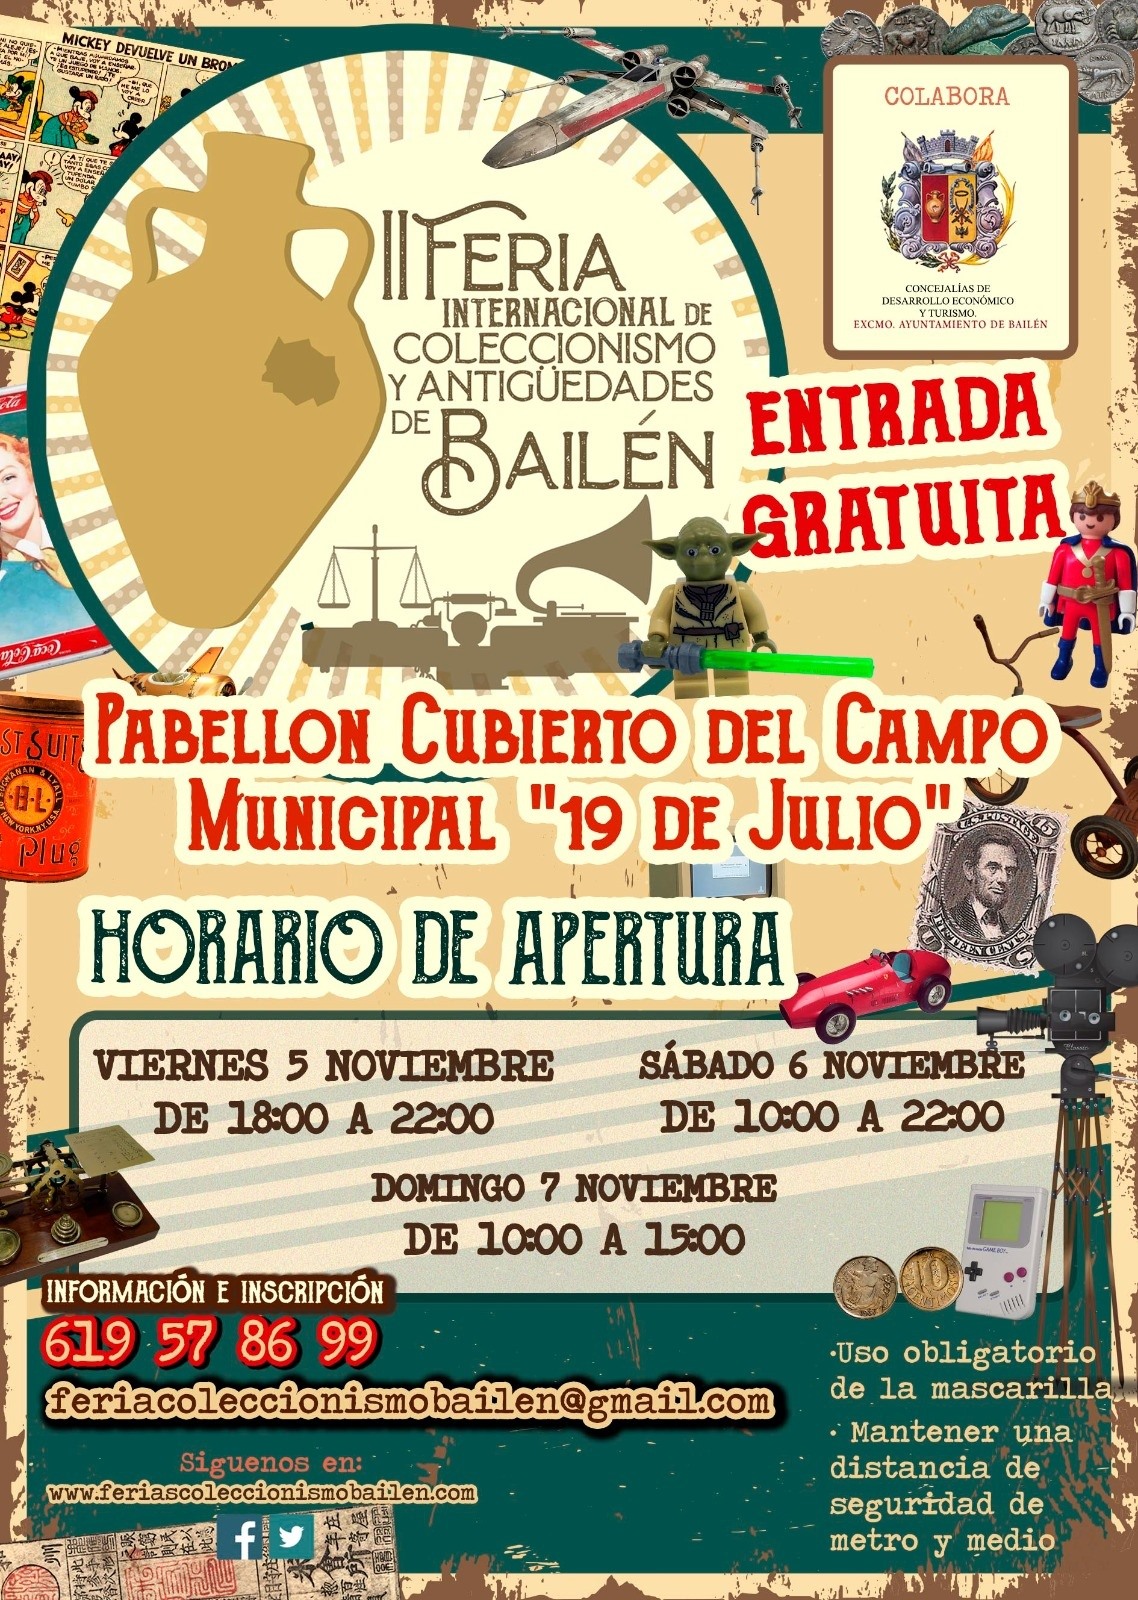 Vuelve II Feria Internacional de Coleccionismo y Antigüedades de Bailén